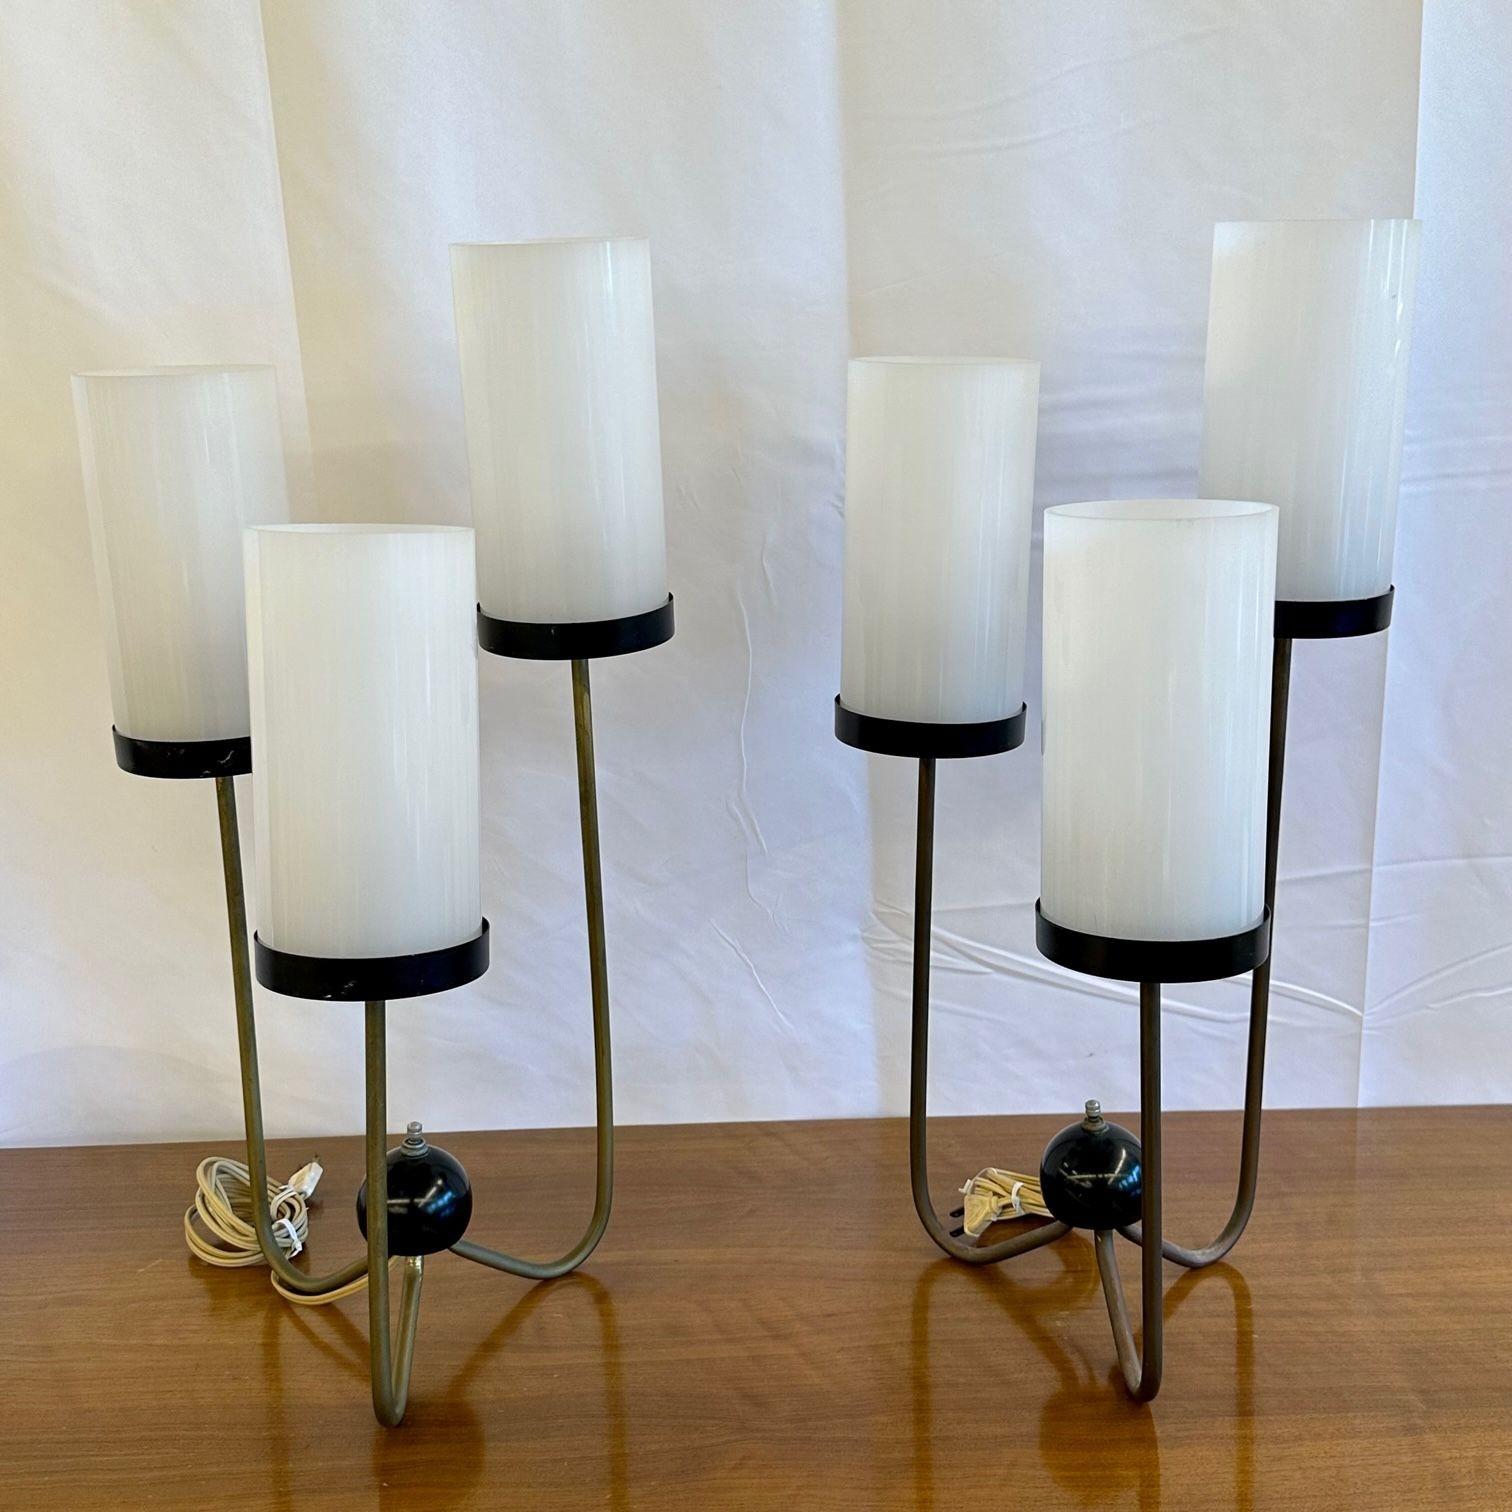 Kurt Versen, Mid-Century Modern, Three Arm Table Lamps, Steel, Brass, USA, 1960s For Sale 3